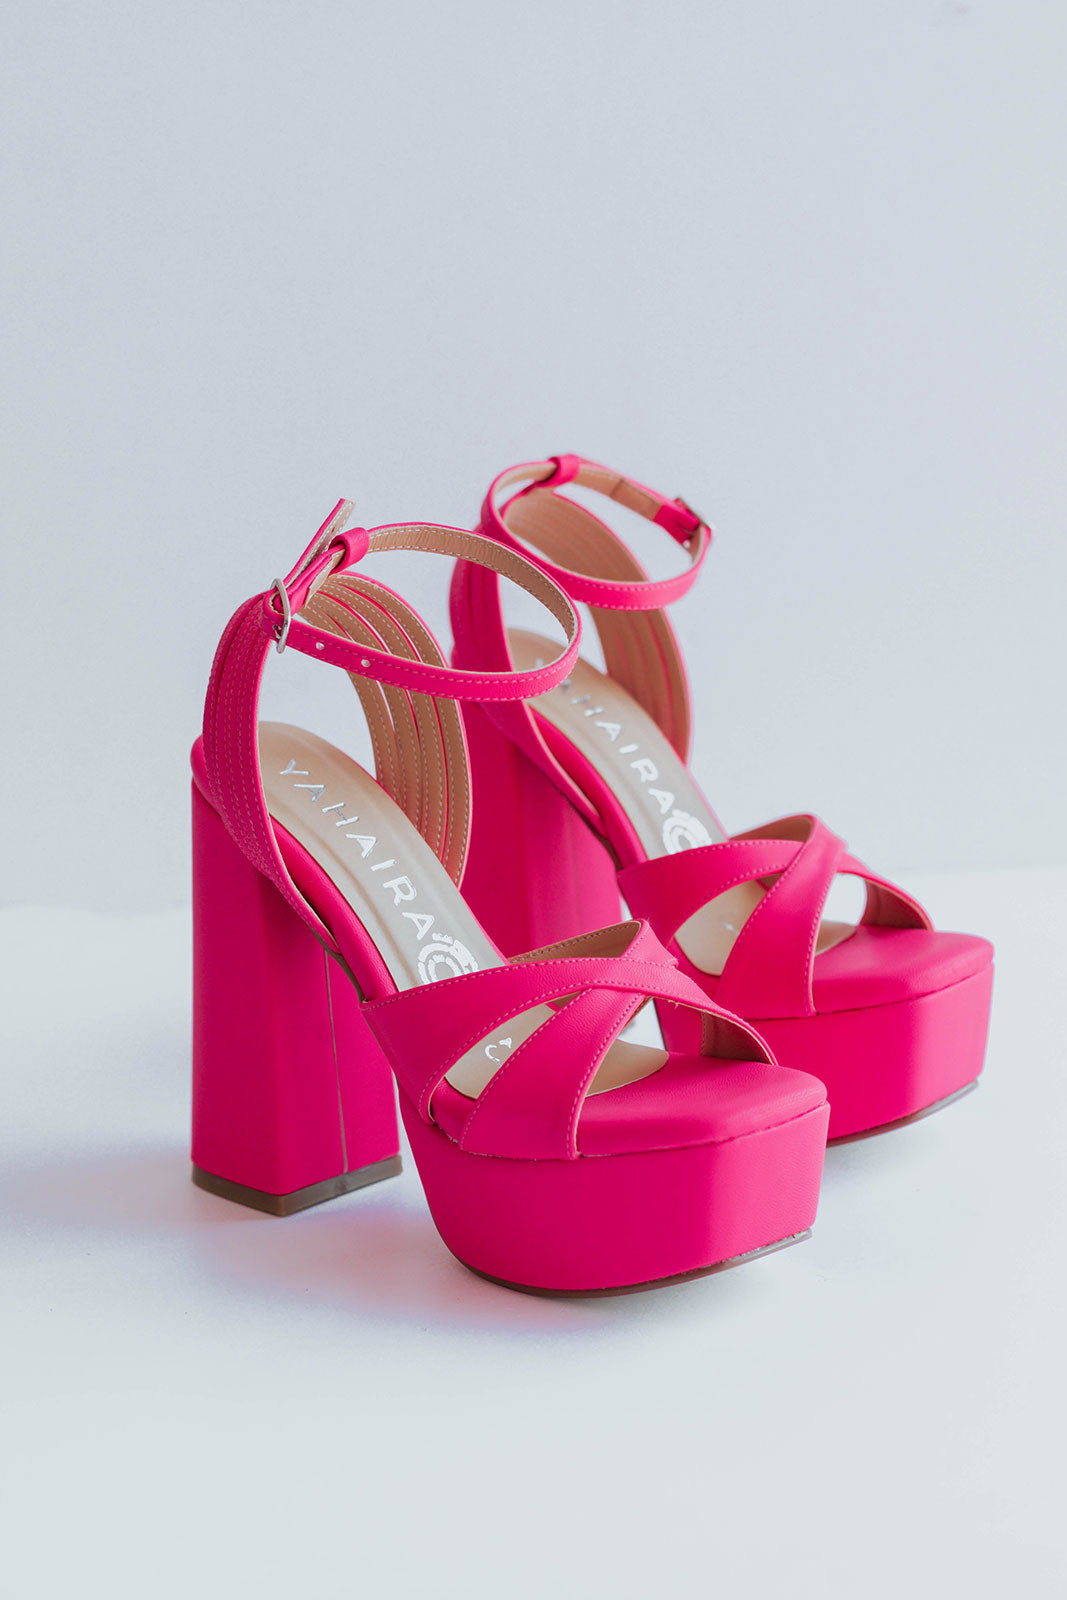 Bárbara -Zapatos de Plataforma Elegantes con Tiras y Plantilla Acolchada, 872-J